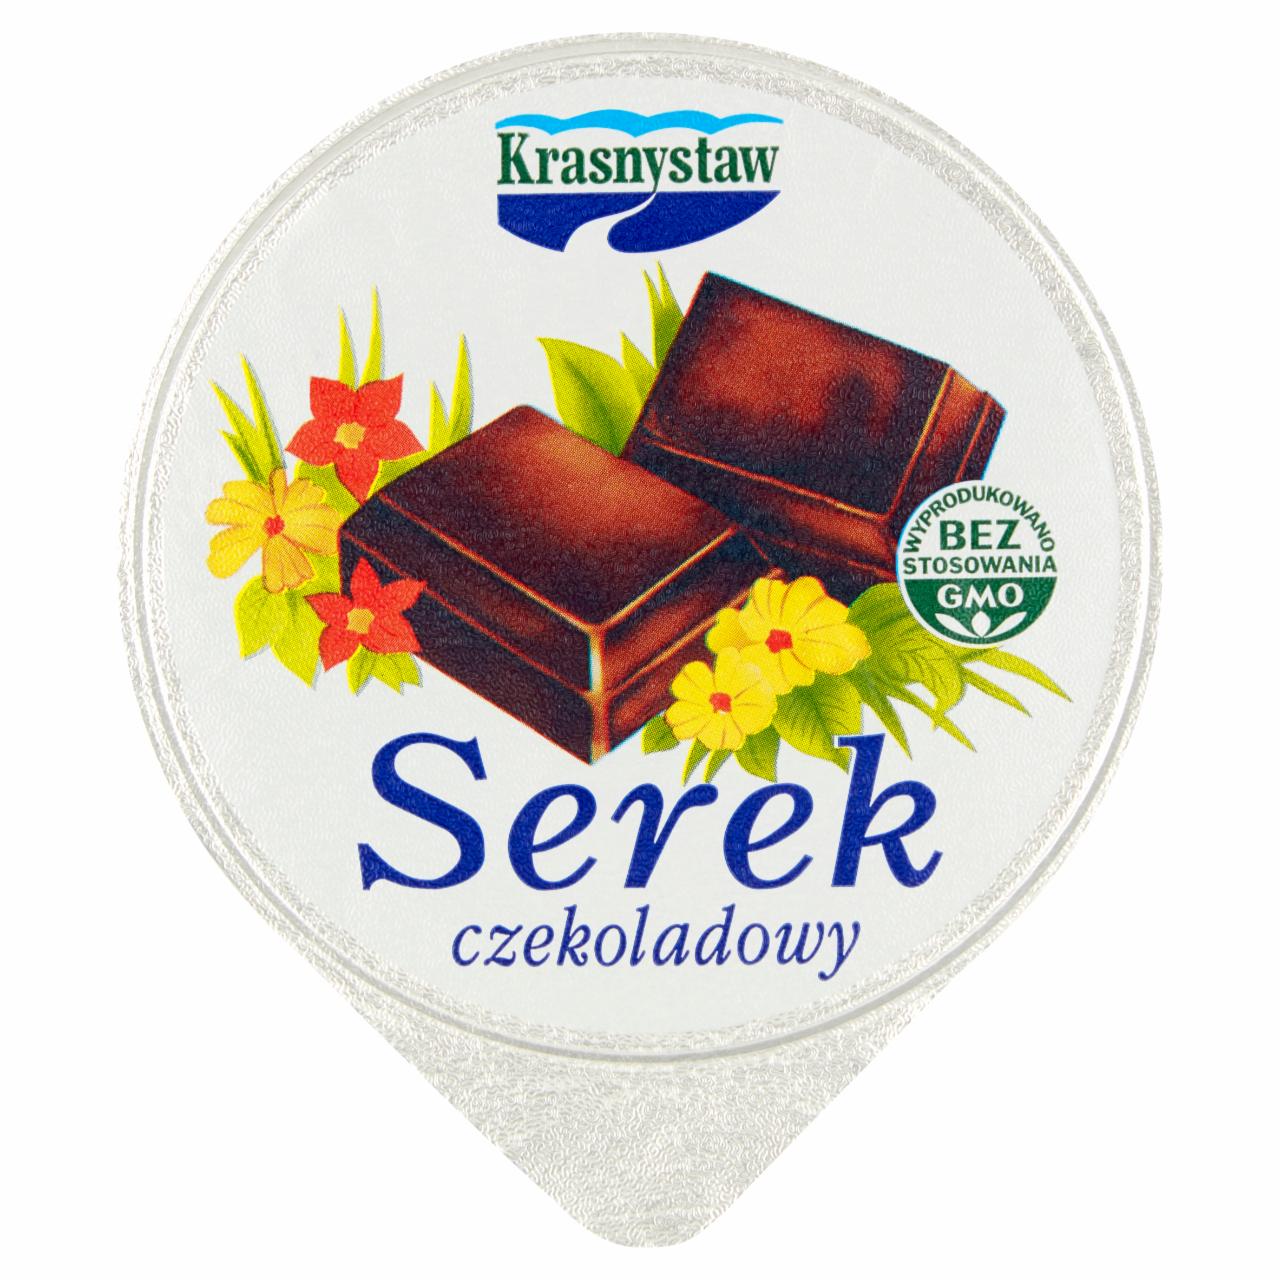 Zdjęcia - Krasnystaw Serek czekoladowy 125 g